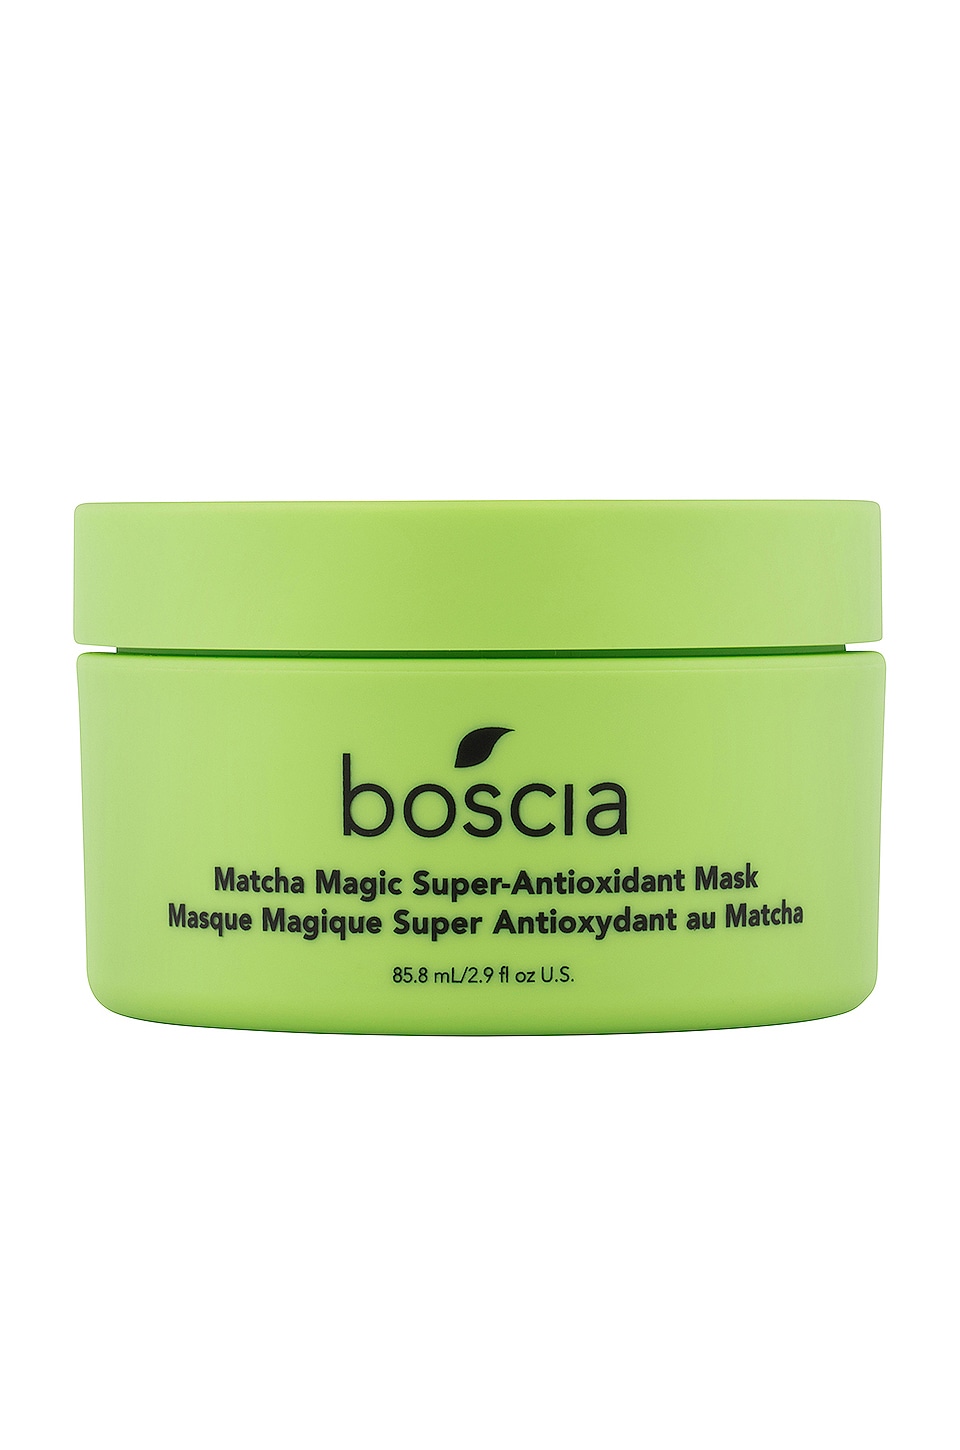 BOSCIA MATCHA MAGIC SUPER-ANTIOXIDANT MASK,BOSC-WU24